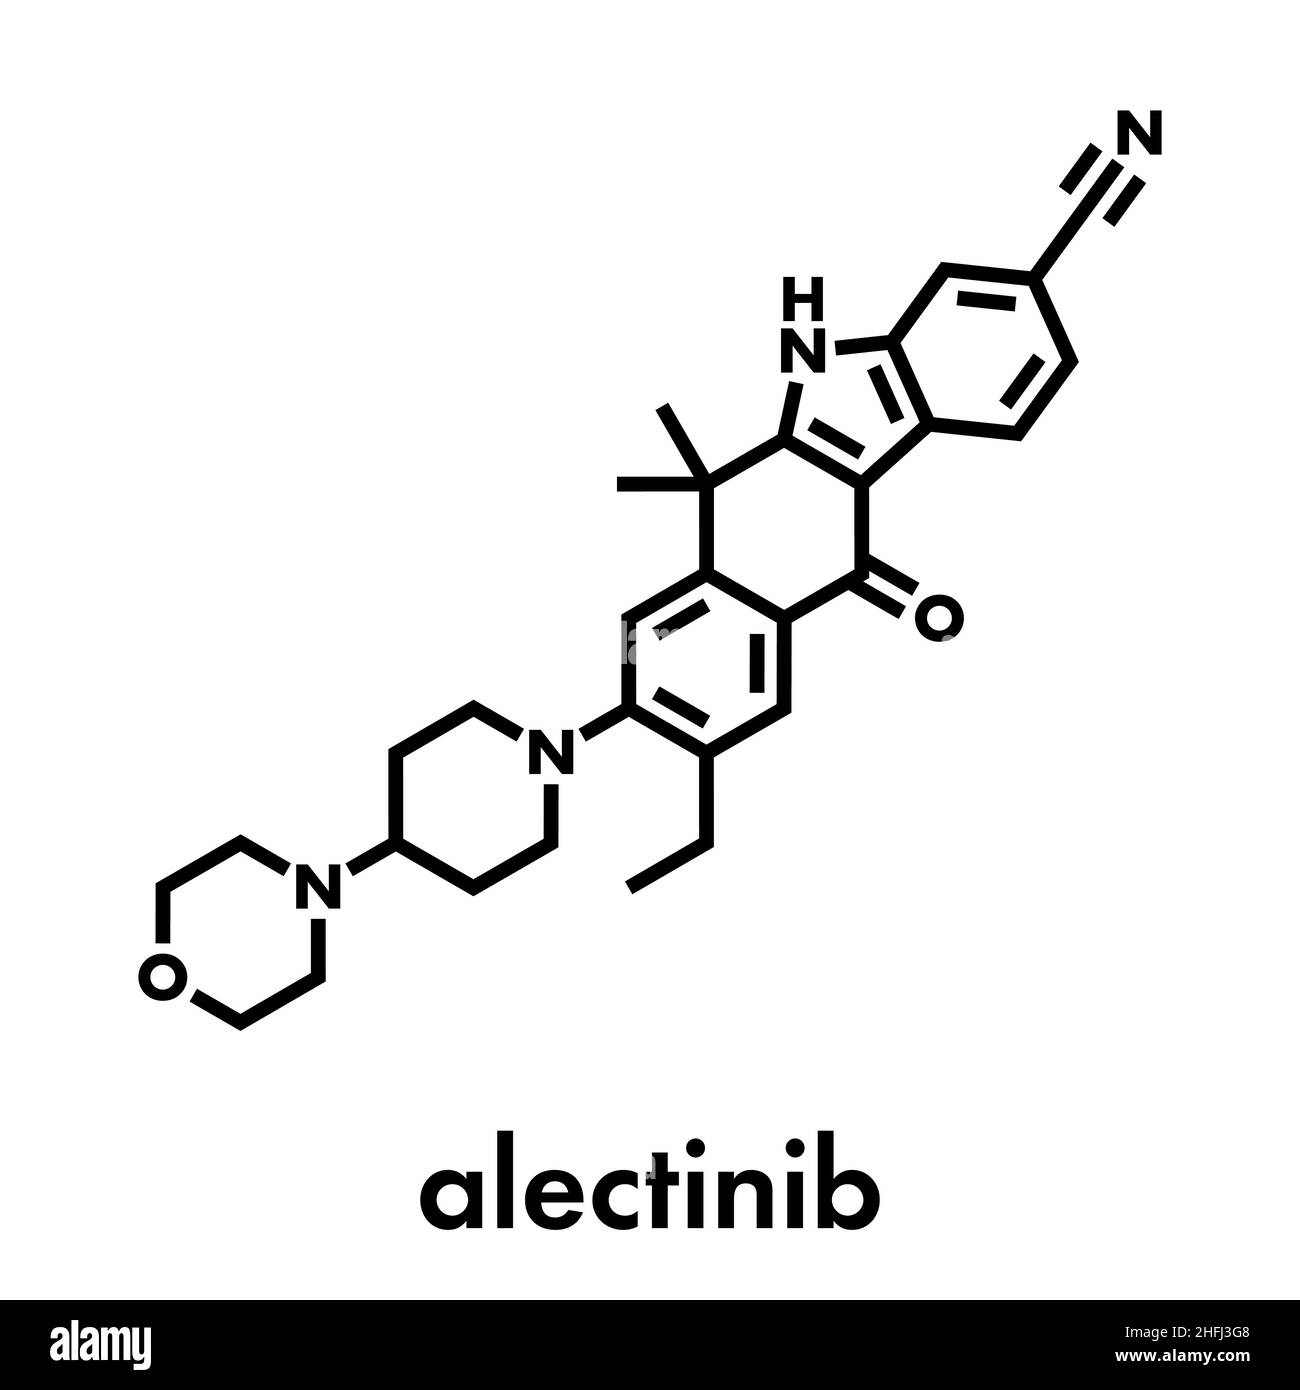 Alectinib cancer drug molecule. Skeletal formula. Stock Vector